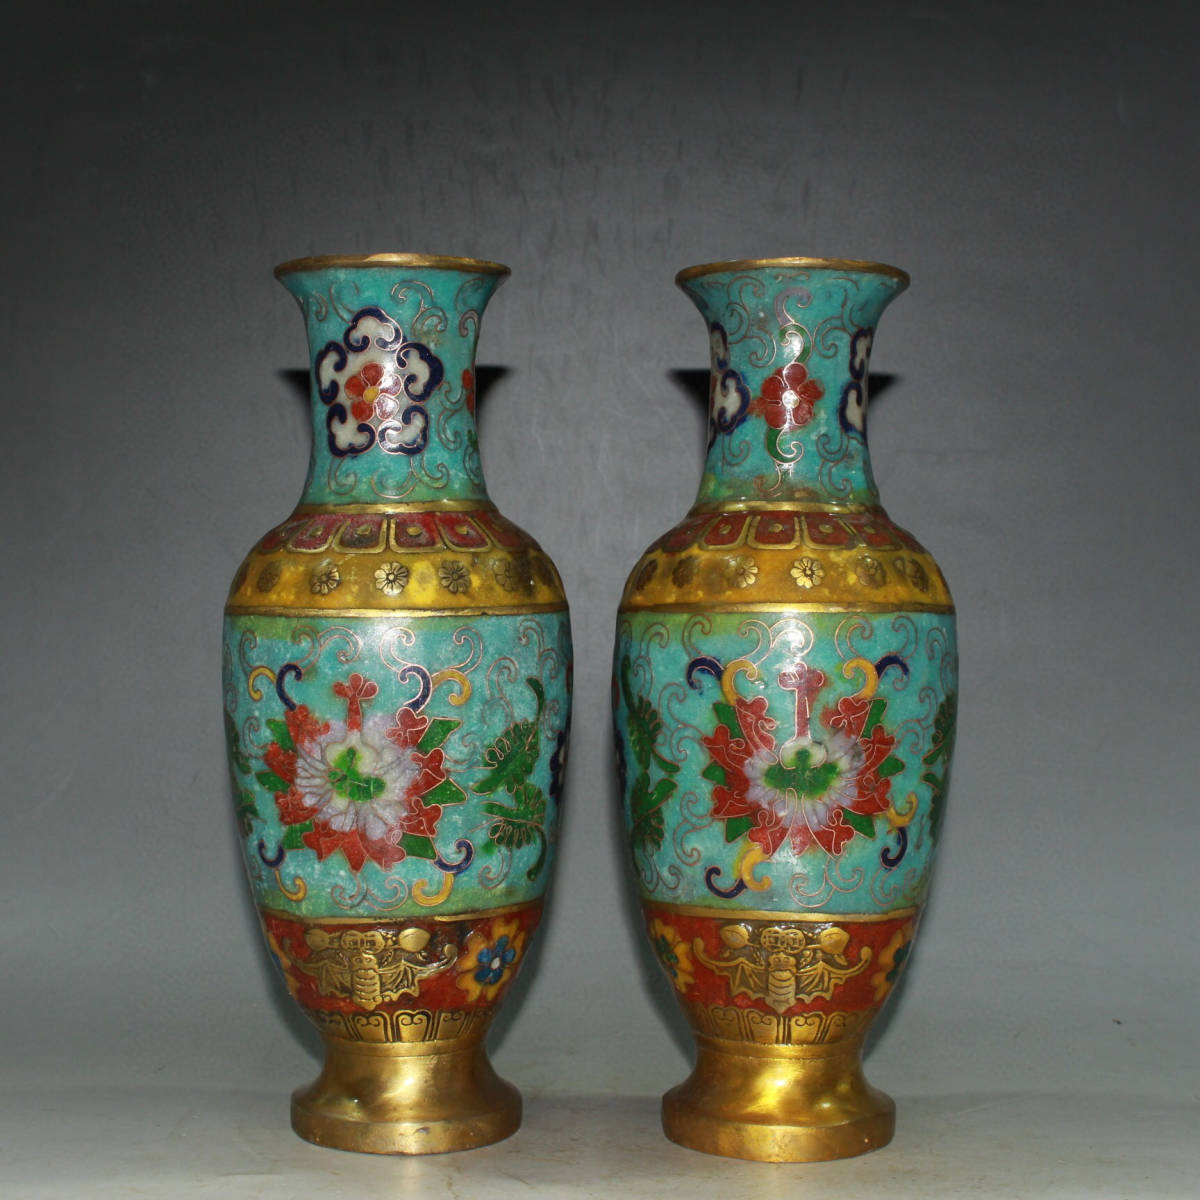 ▽鴻▽ 銅製 塗金 景泰藍 琺瑯彩 花卉紋 花瓶一對 置物 古賞物 中国